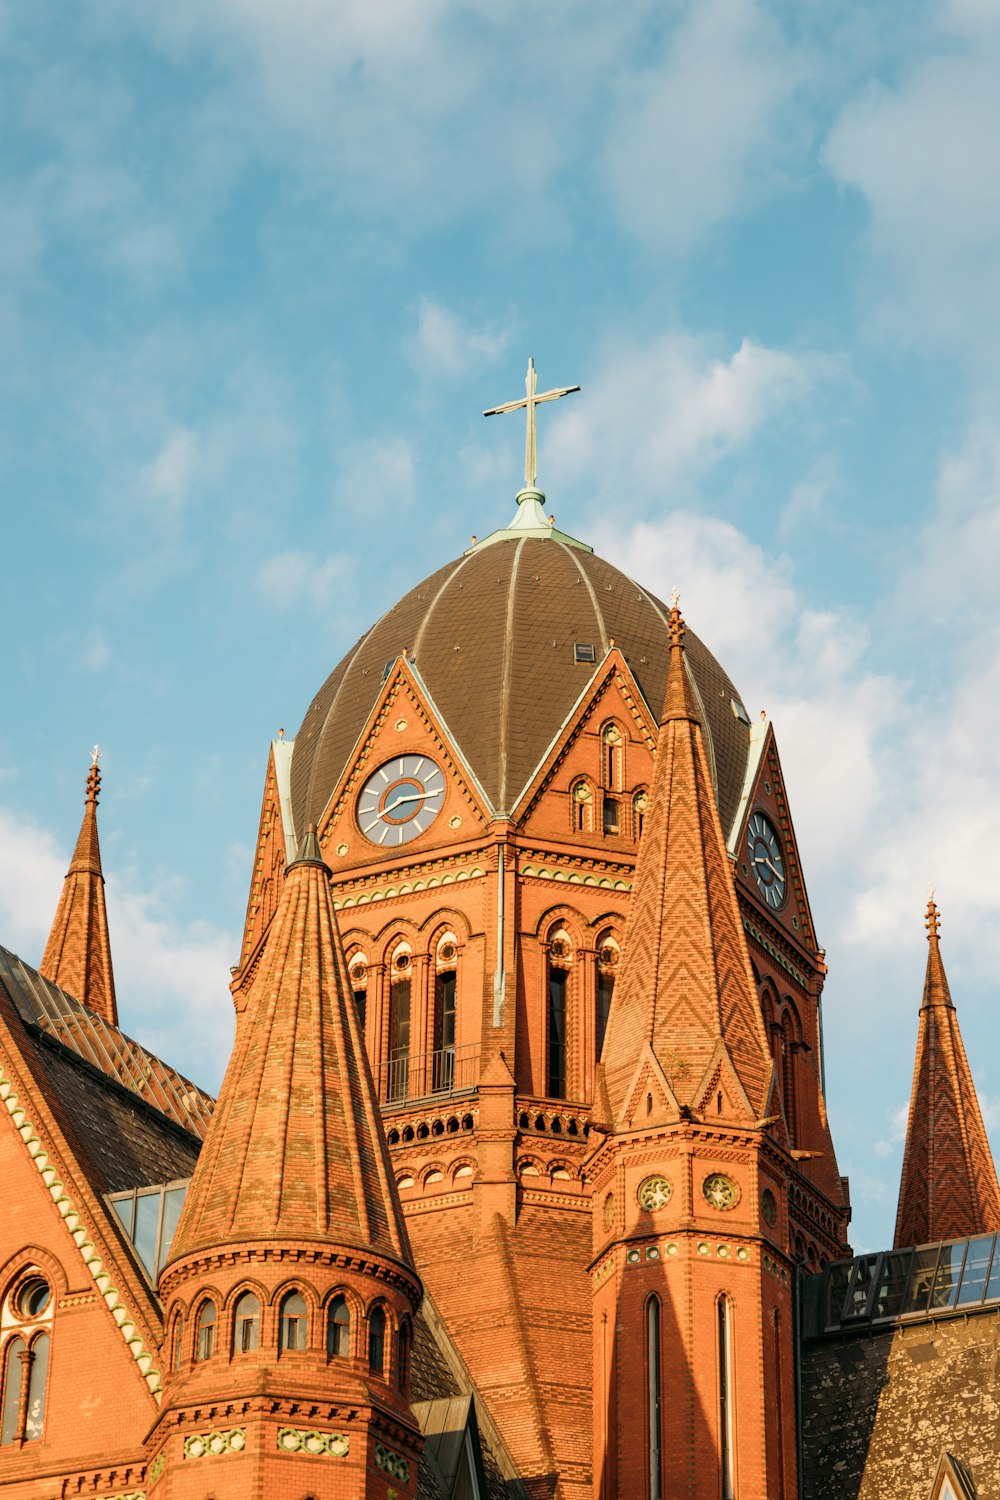 昼間の青空に映える茶色いコンクリートの教会